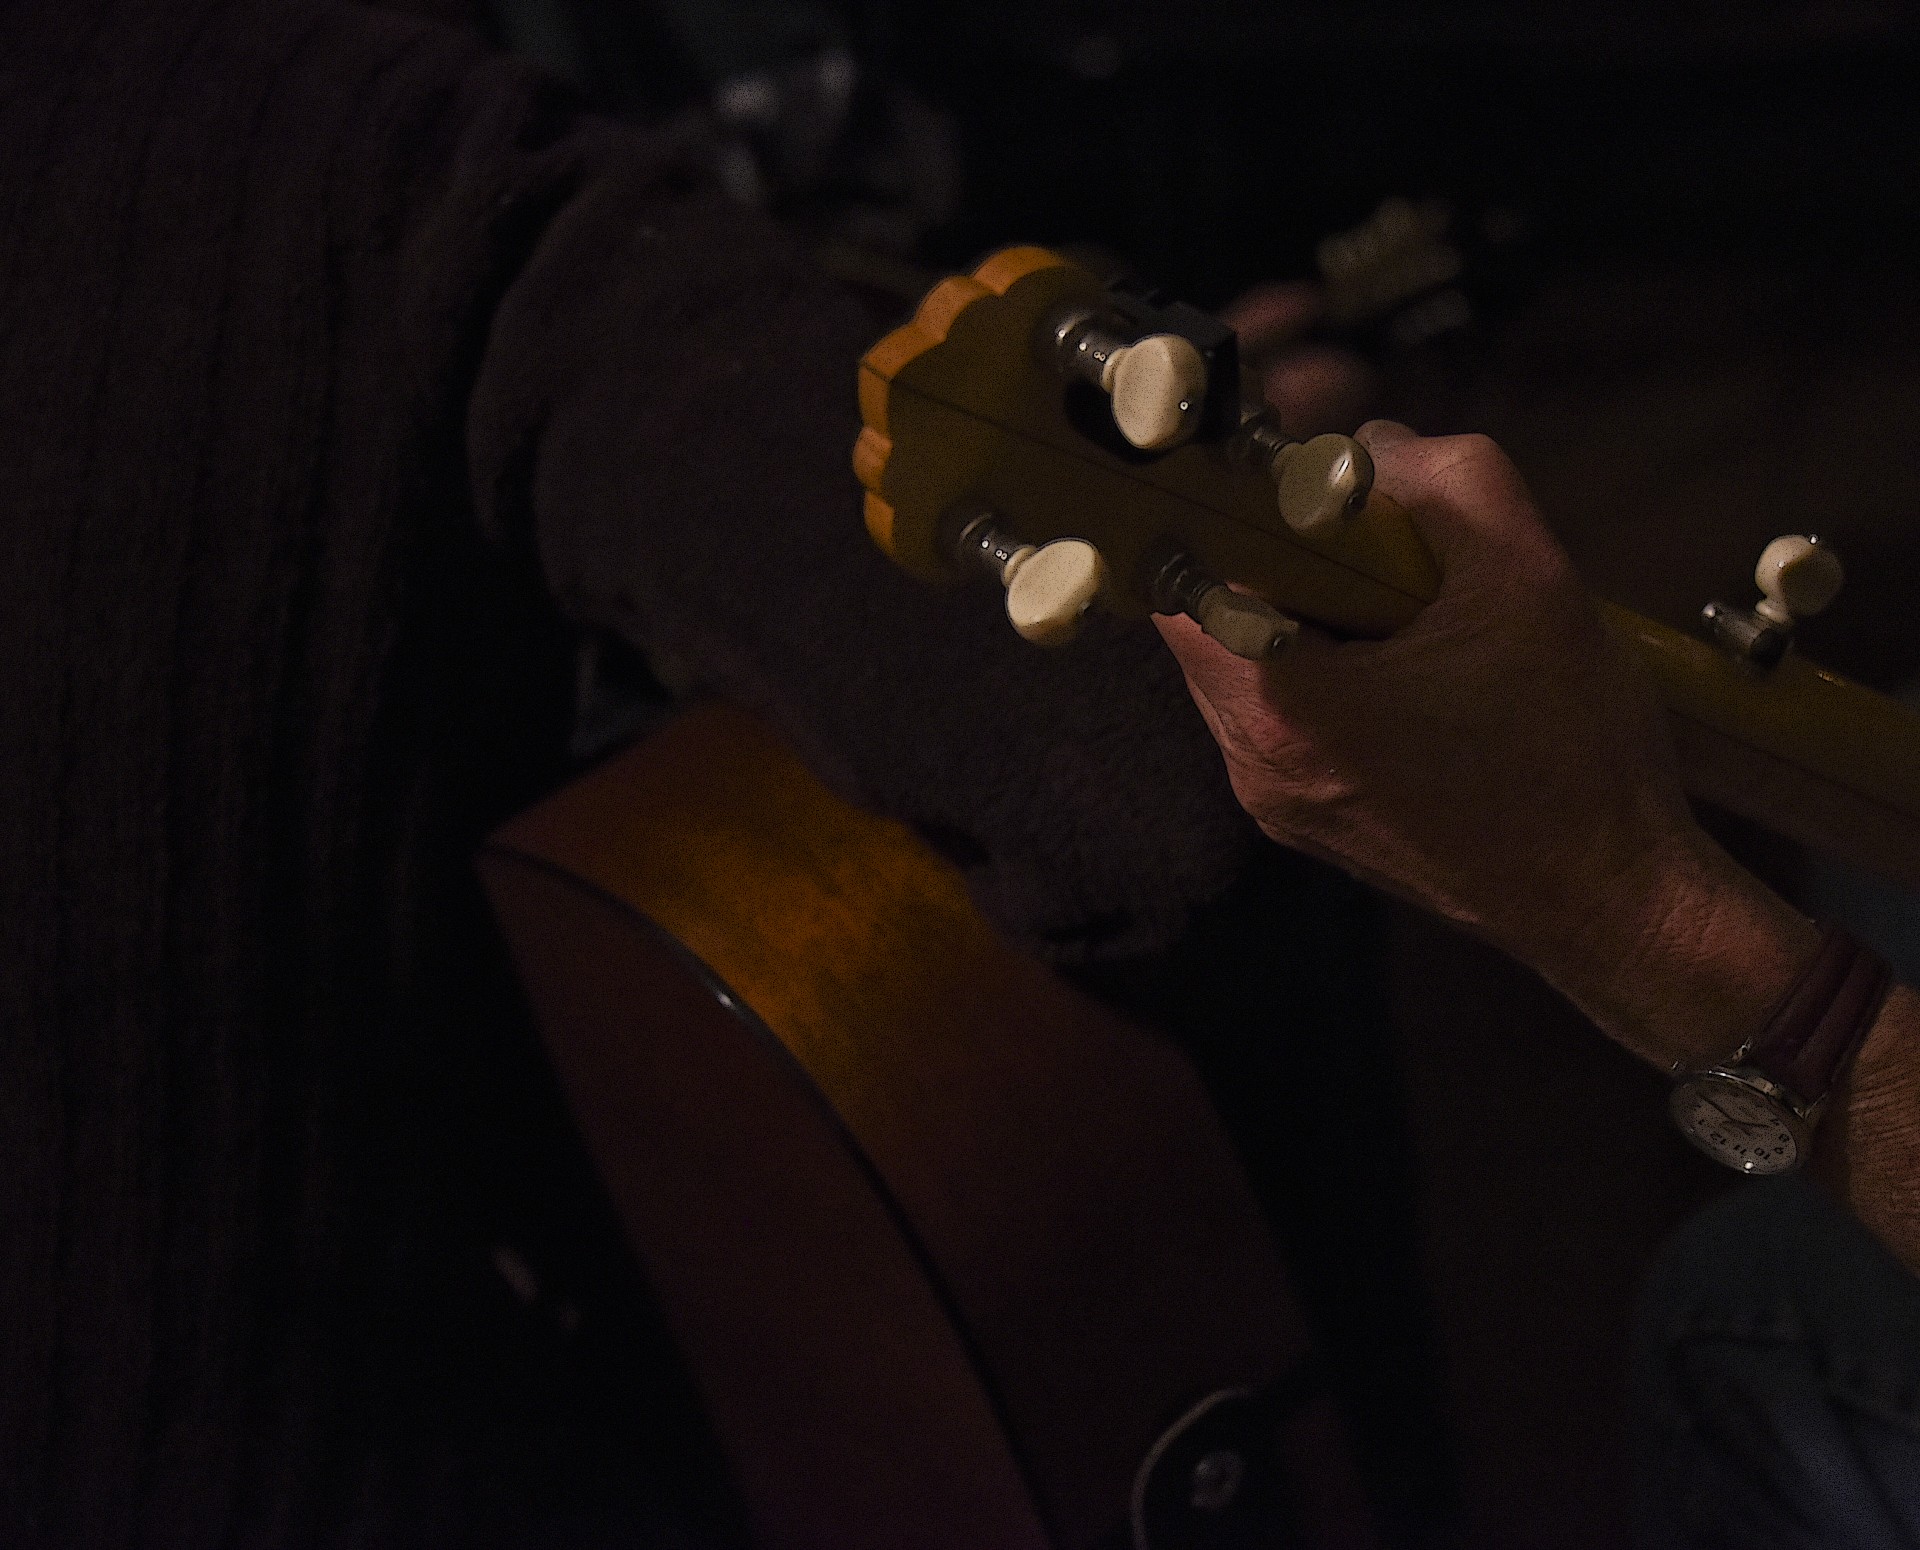 Banjo player mână de noapte